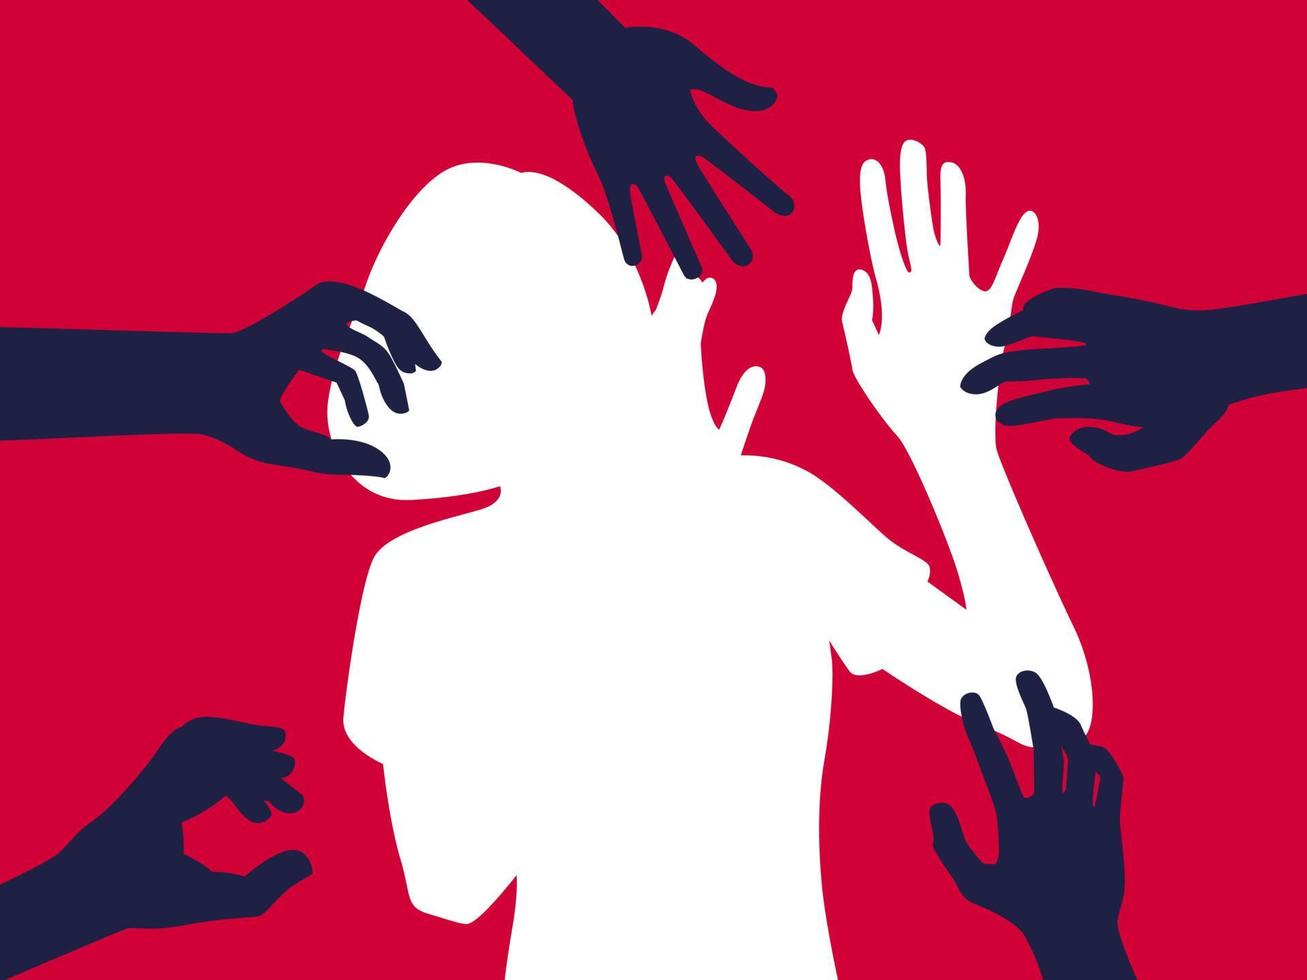 silhouet van vrouw, intimidatie vectorillustratie. handen van de man die vrouwen aanraakt. geweld tegen vrouwen, pesten op het werk concept. plat concept, tekst, blauw, wit, slachtoffer, seksueel, verkrachting vector